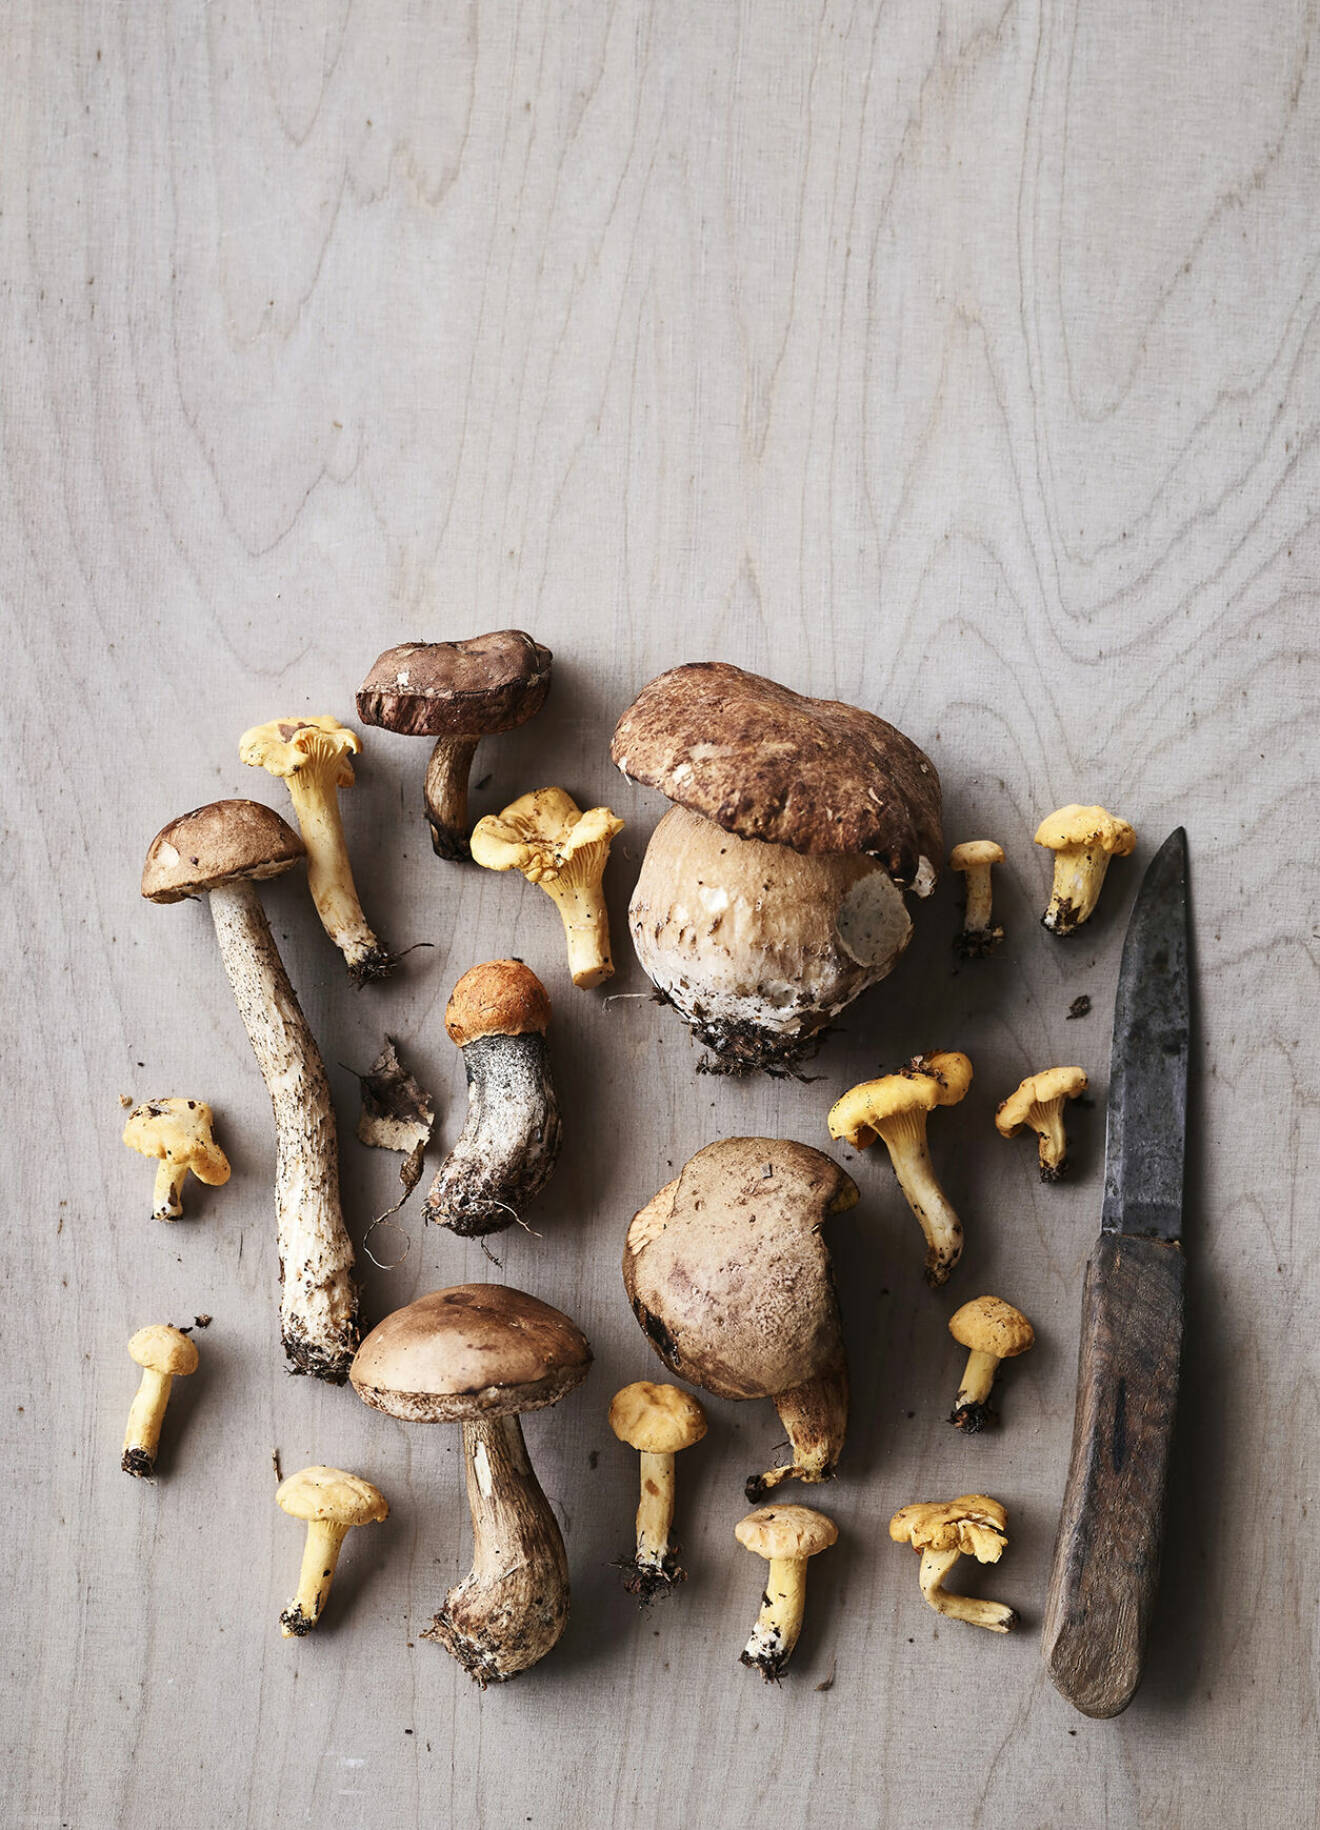 Det fina med svampar är att de har så många användningsområden – ät färska, torka, färga kläder är bara några exempel